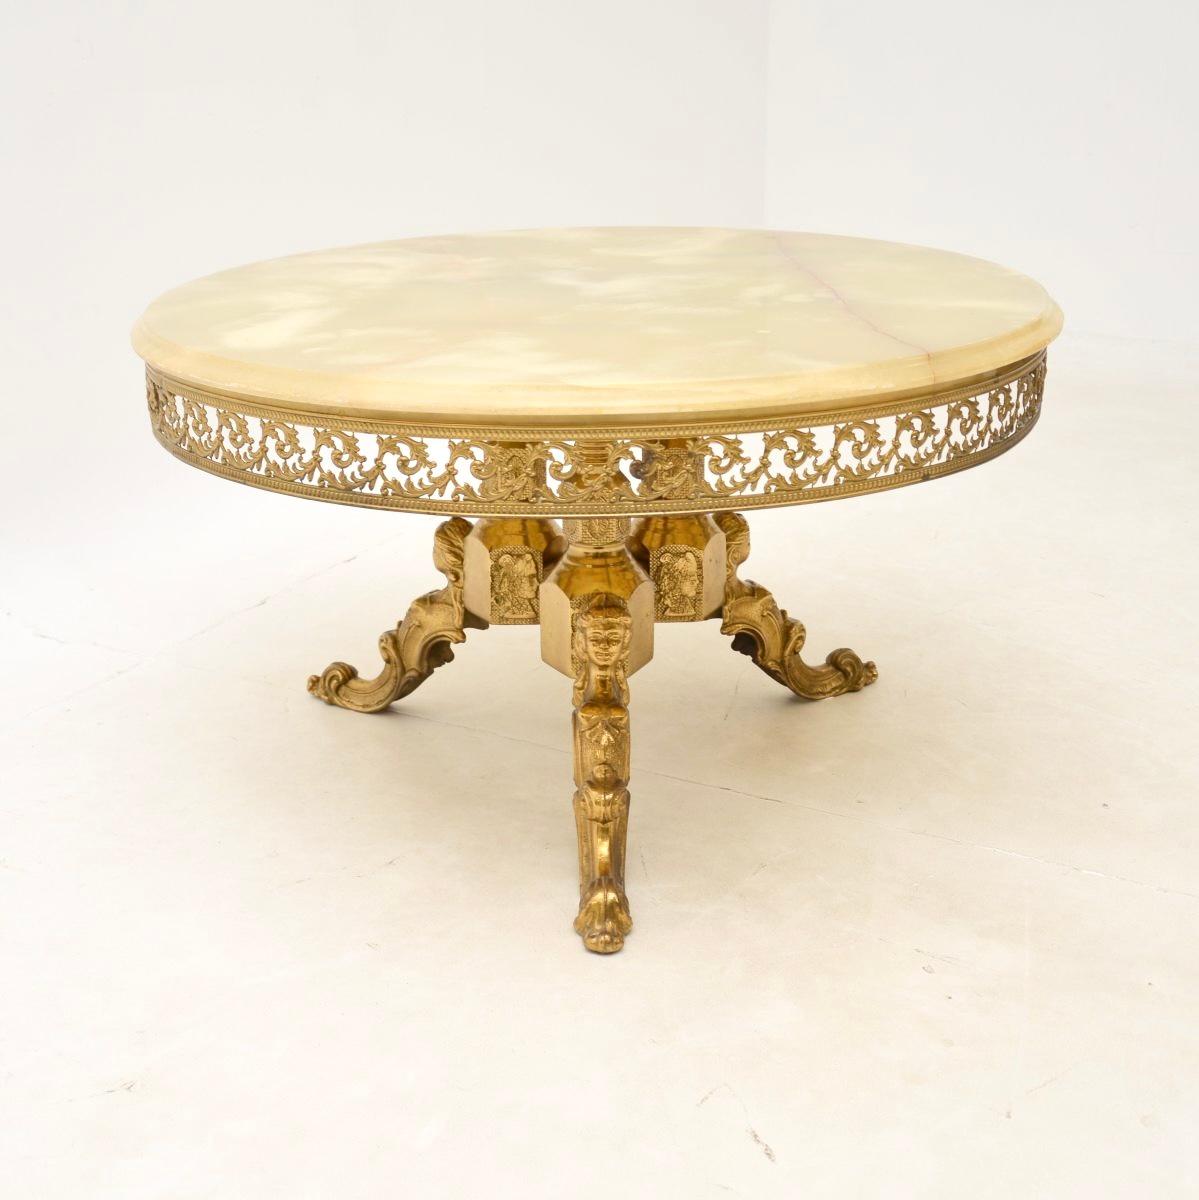 Magnifique table basse ancienne en laiton et onyx, datant des années 1930.

Il est de très bonne qualité et d'une taille très utile. Le grand plateau circulaire en onyx est d'une couleur magnifique. Il repose sur une base en laiton massif